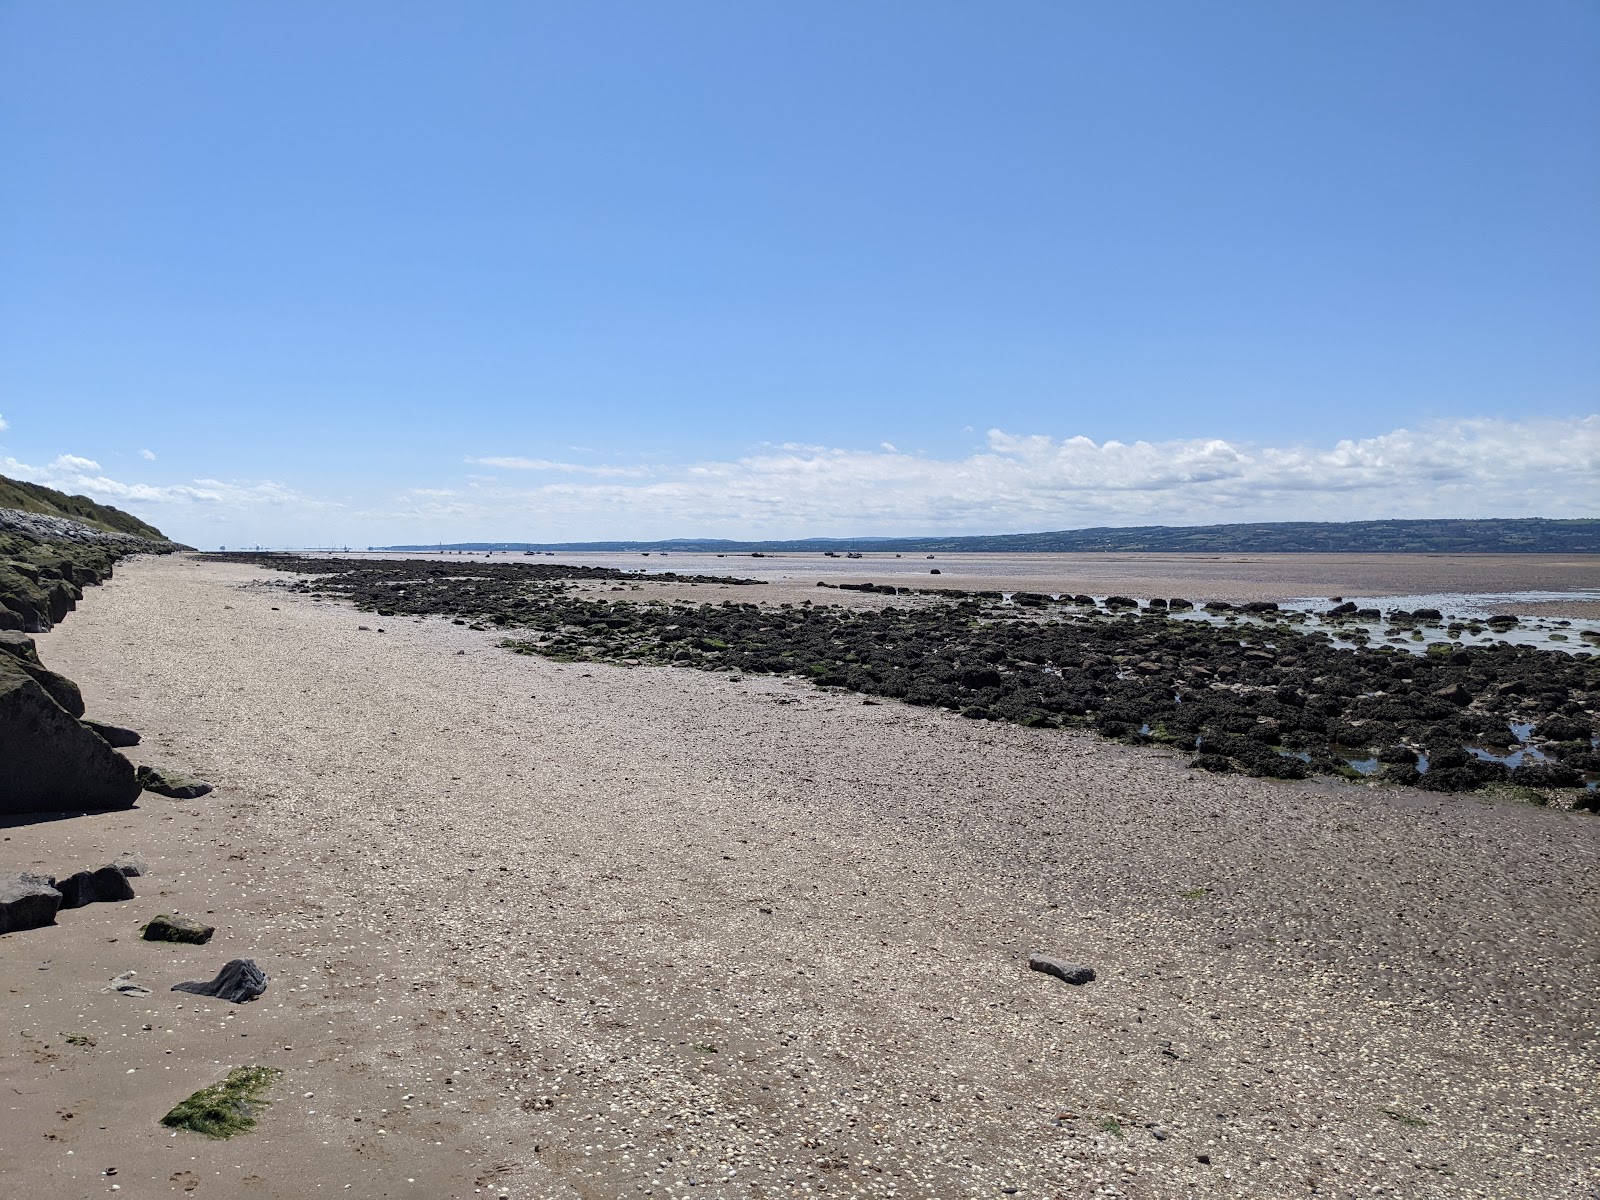 Zdjęcie Caldy Beach - popularne miejsce wśród znawców relaksu